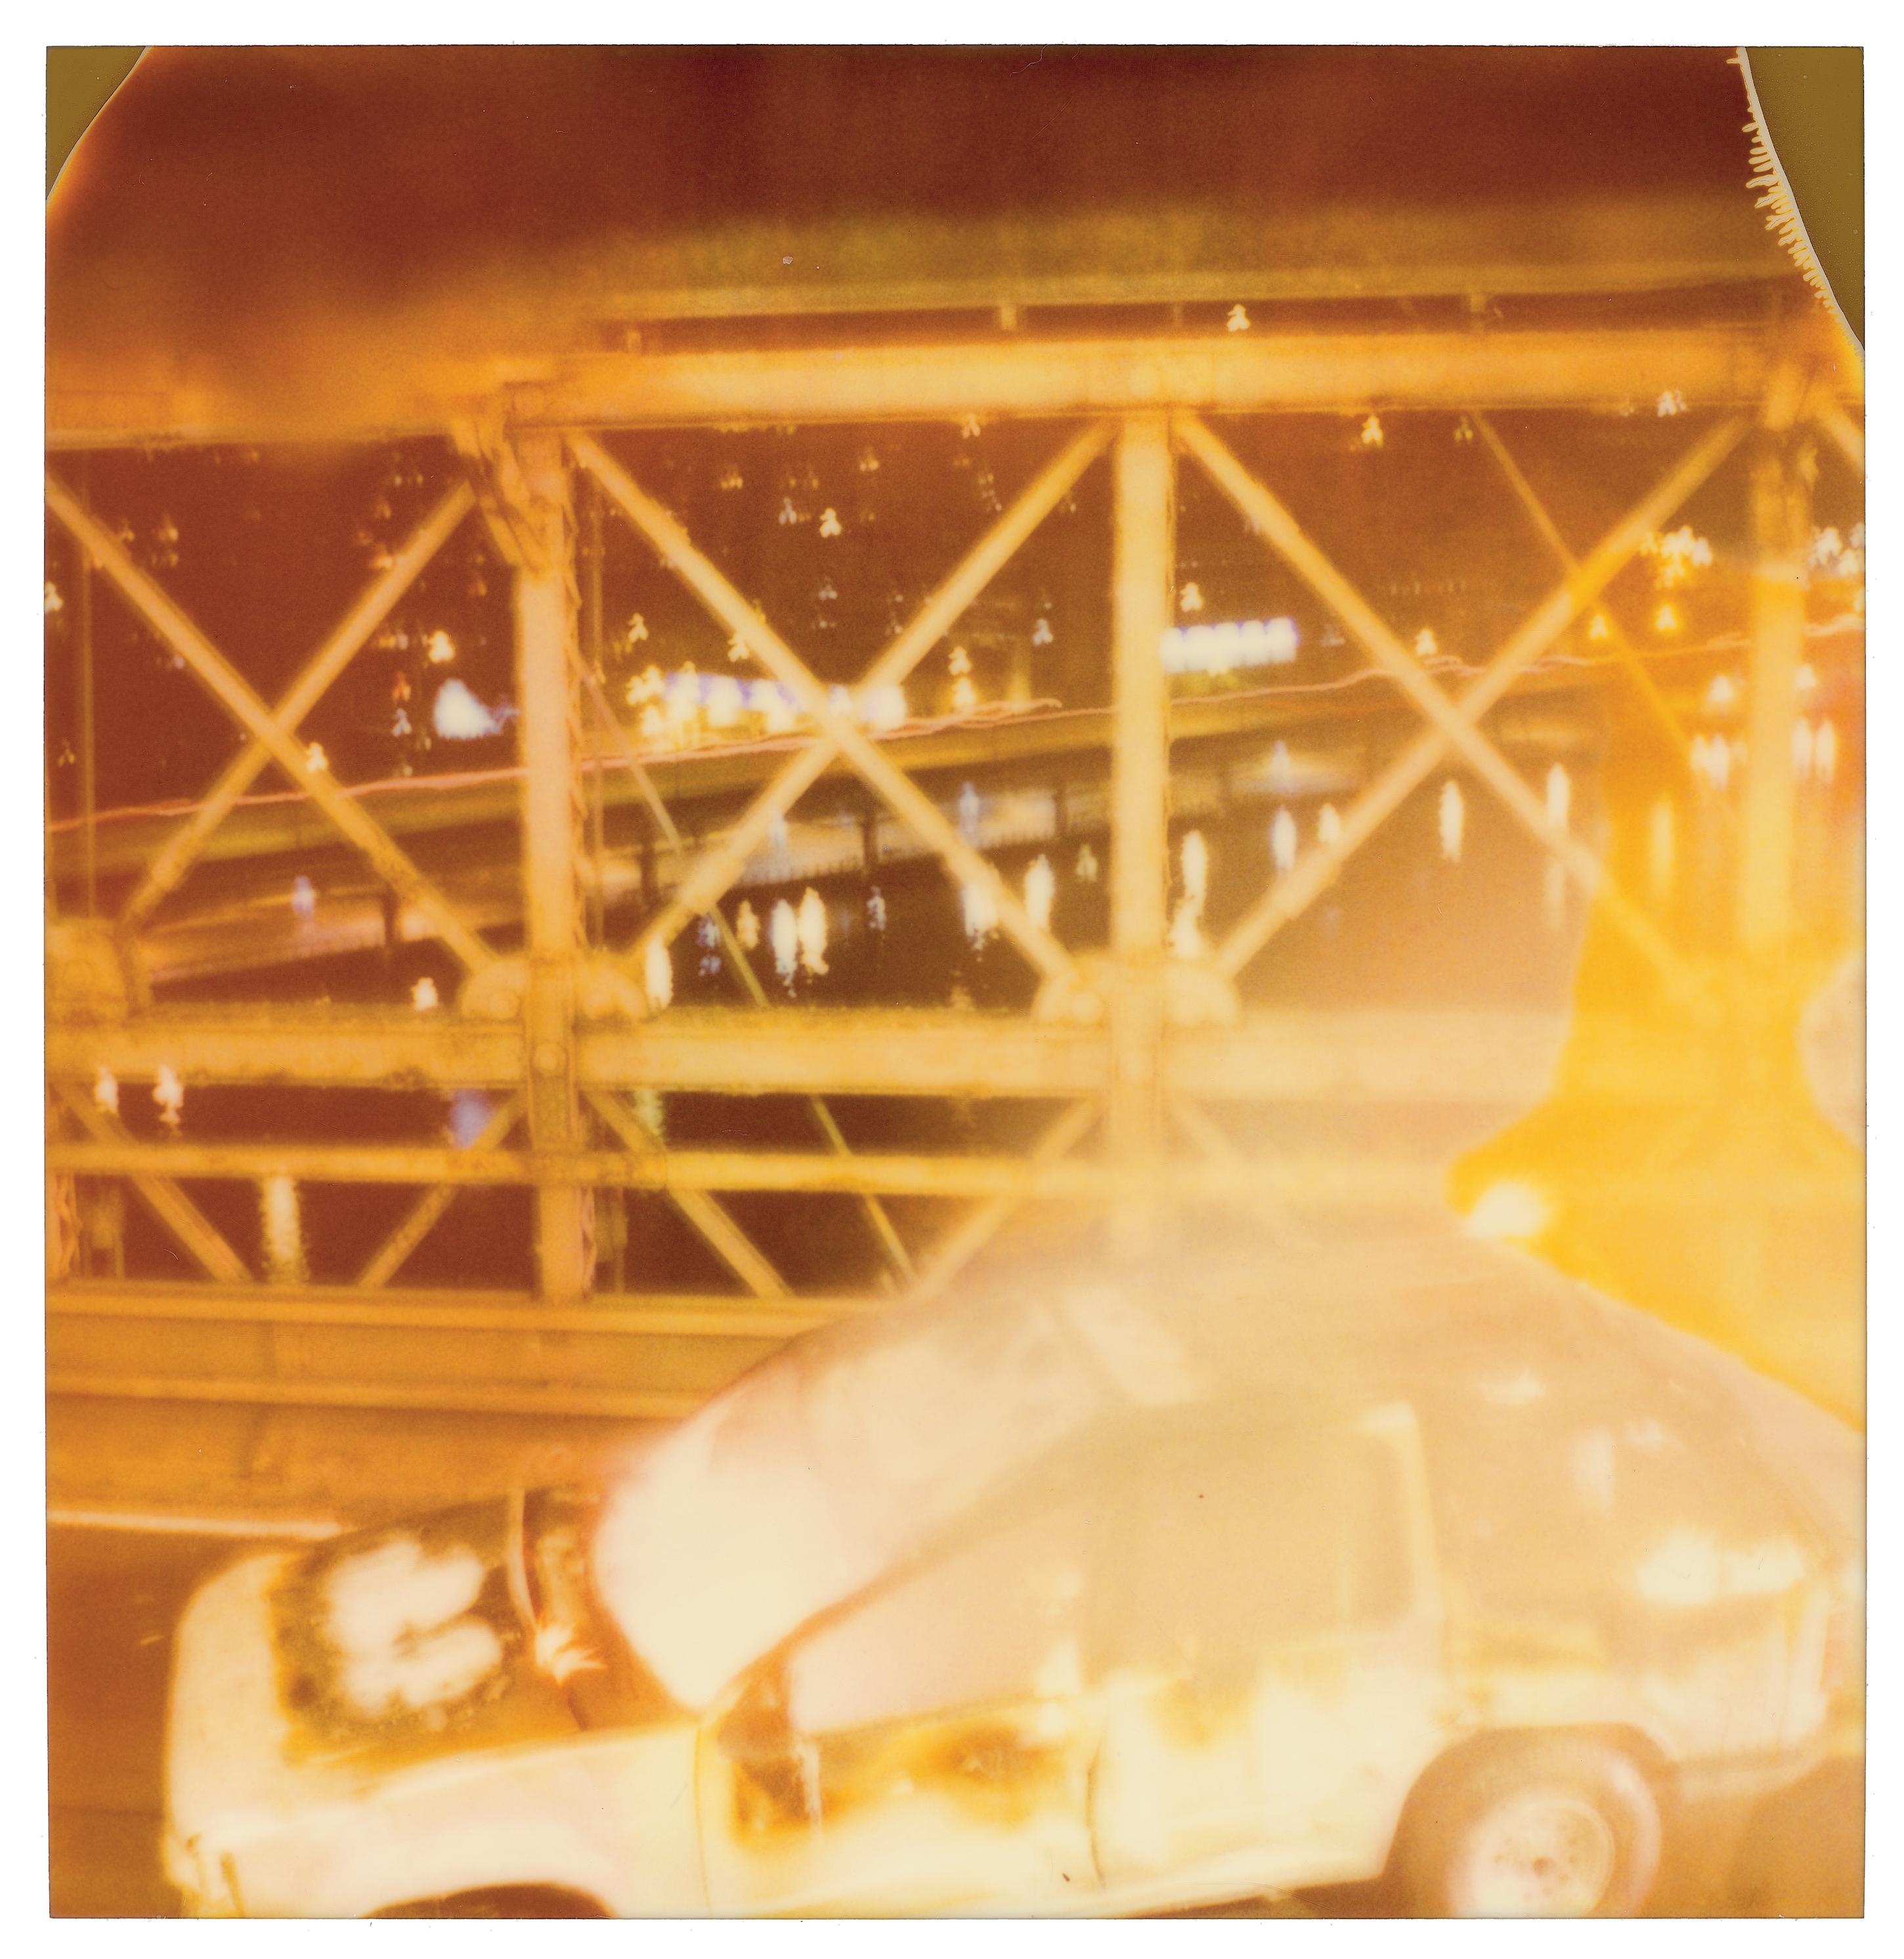 Stefanie Schneider Landscape Photograph - Burning Car (Stay) - analog, mounted, 128x125cm, Brooklyn Bridge, Polaroid